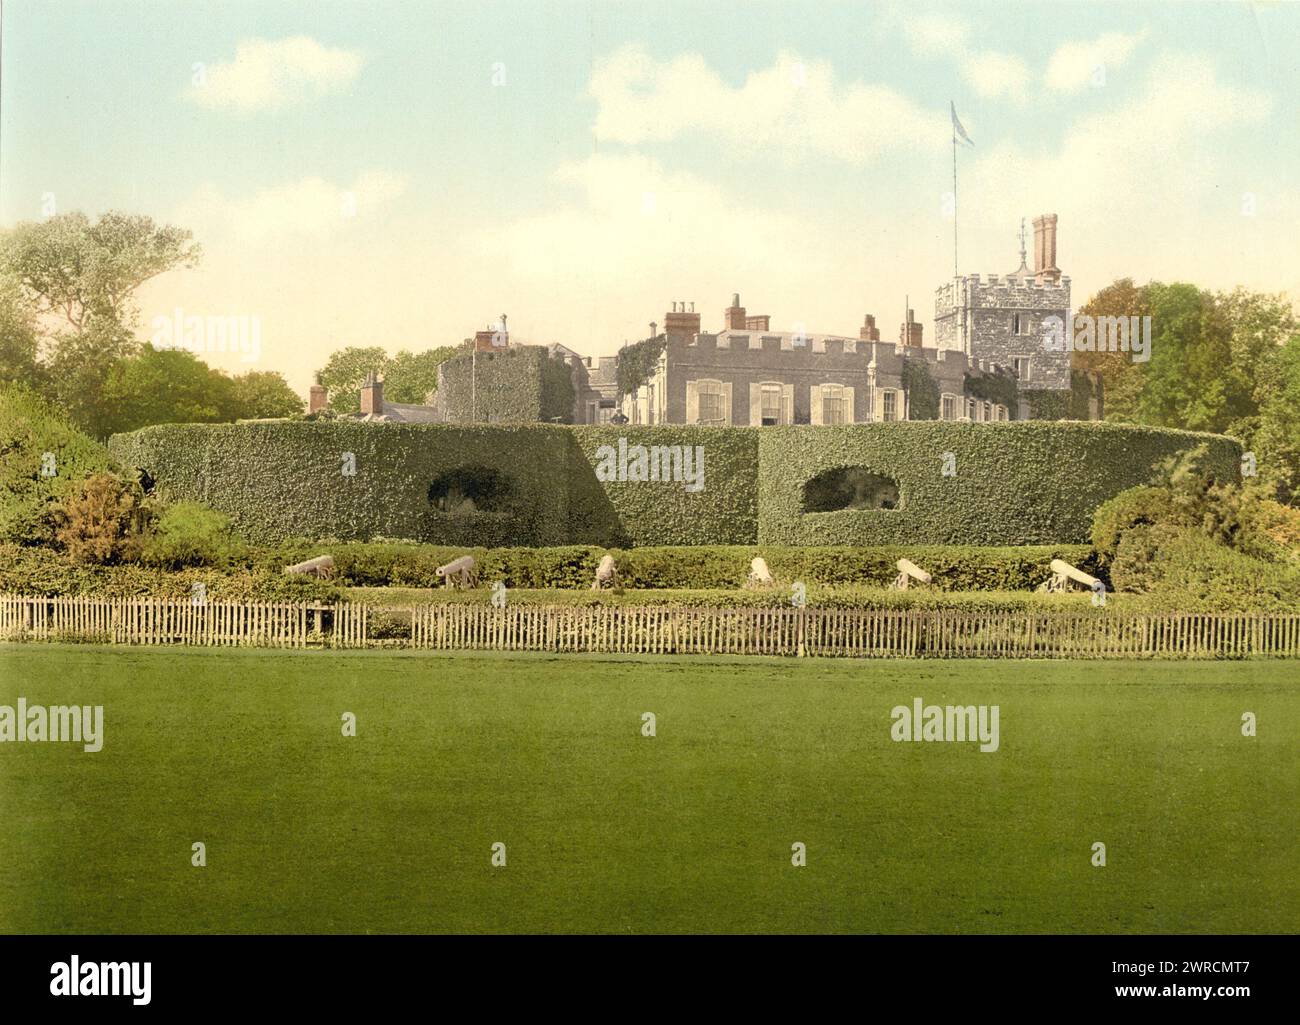 El castillo, Walmer, Inglaterra, Imagen muestra el castillo de Walmer en Kent, Inglaterra que fue construido por Enrique VIII en 1539-1540 como una fortaleza de artillería para contrarrestar la amenaza de invasión de Francia y España., entre aprox. 1890 y ca. 1900., Inglaterra, Walmer, Color, 1890-1900 Foto de stock